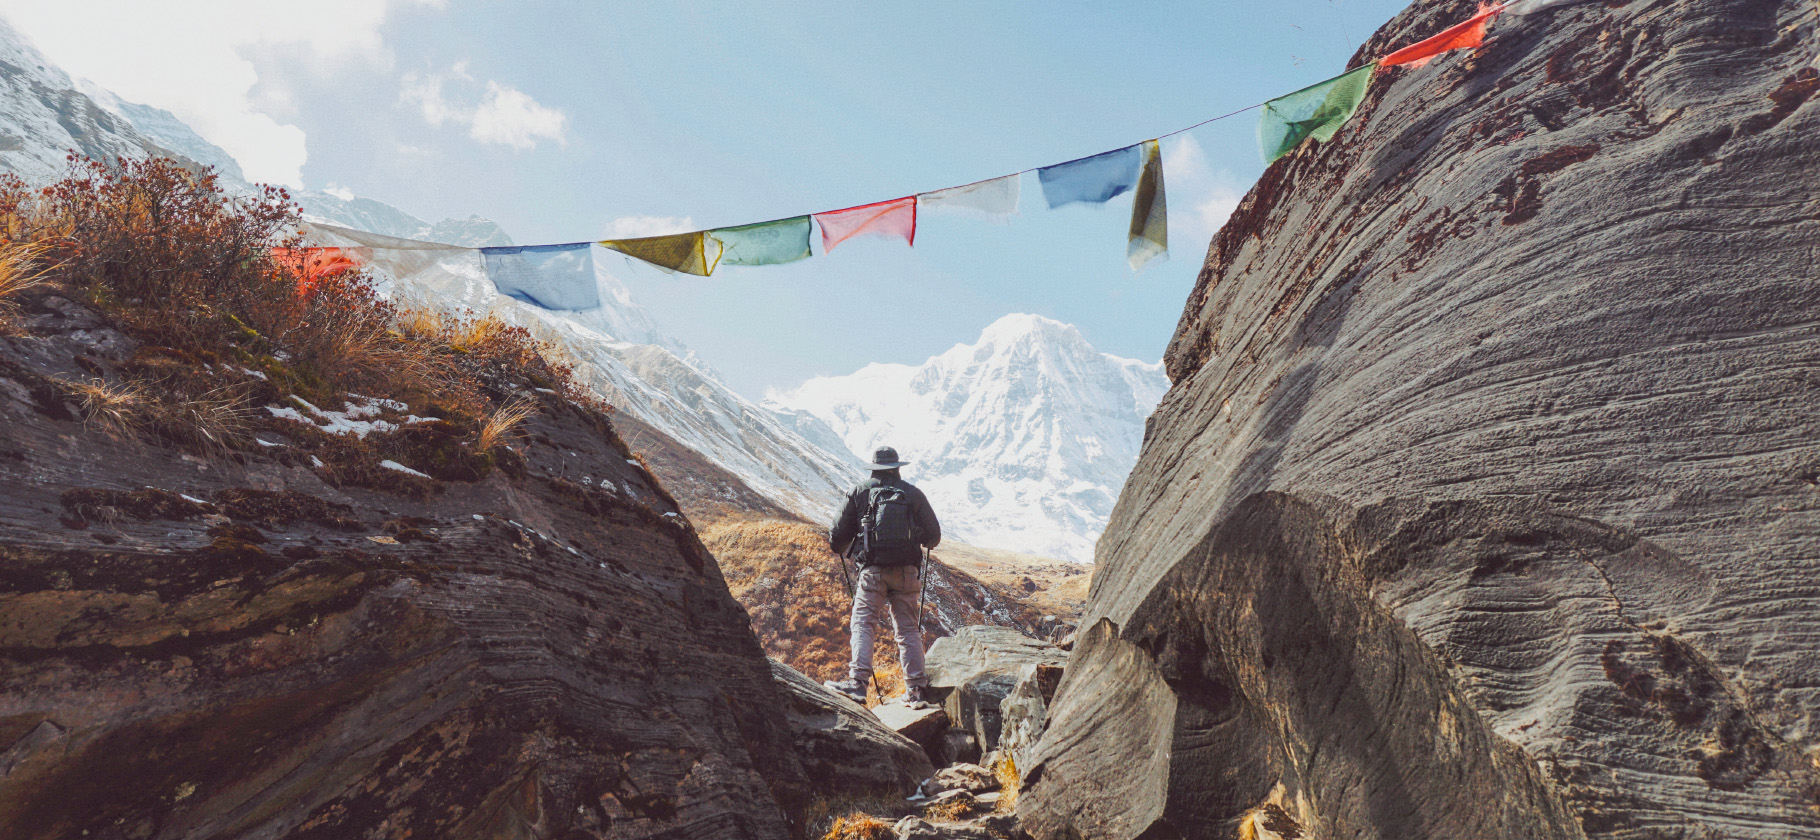 Как мы с мужем прошли 205 километров вокруг Аннапурны в Непале